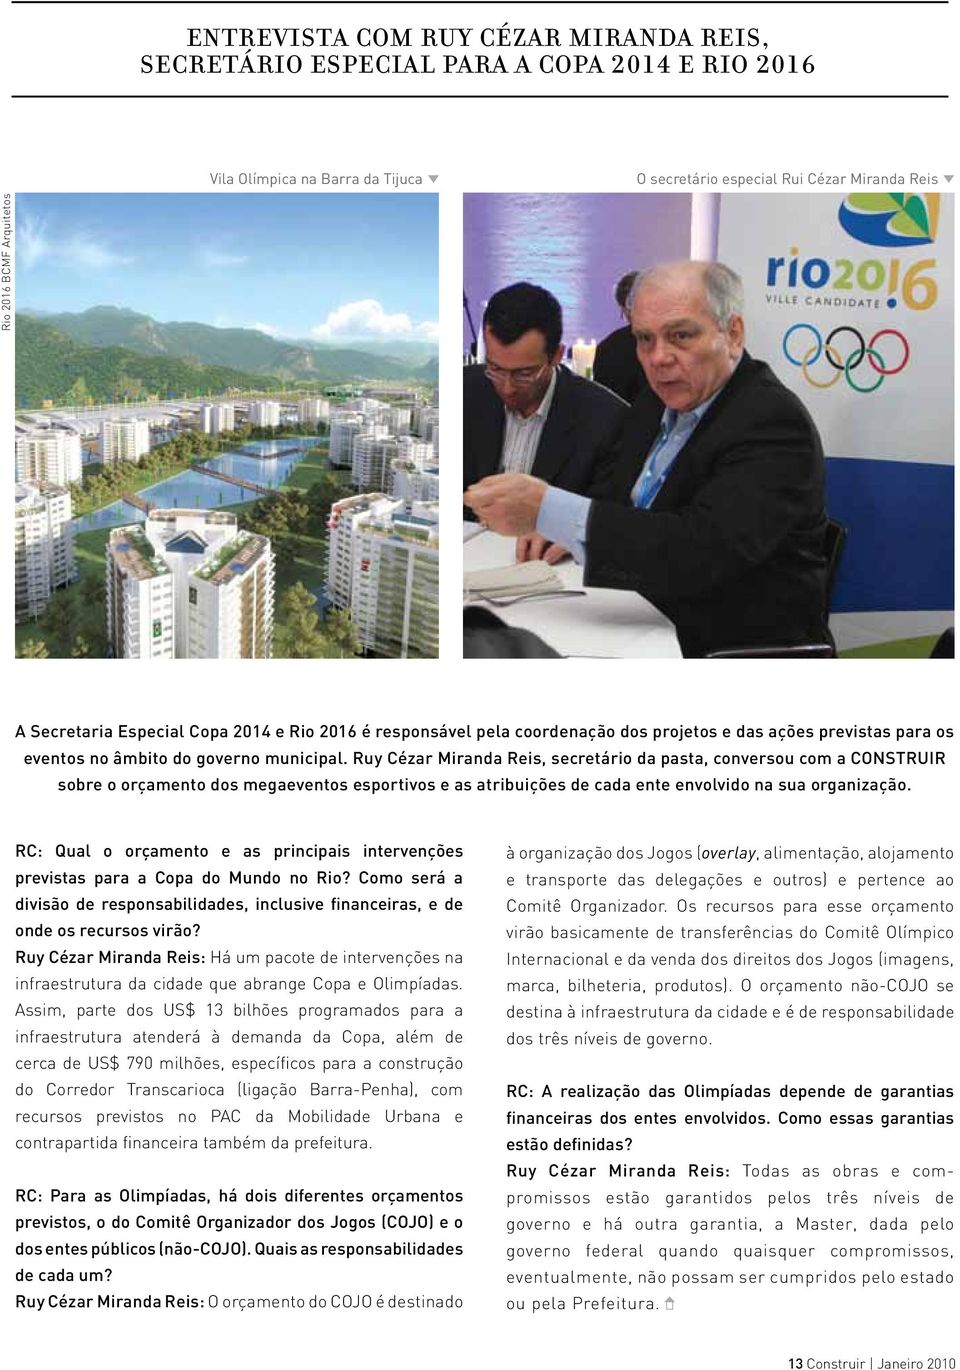 Ruy Cézar Miranda Reis, secretário da pasta, conversou com a CONSTRUIR sobre o orçamento dos megaeventos esportivos e as atribuições de cada ente envolvido na sua organização.